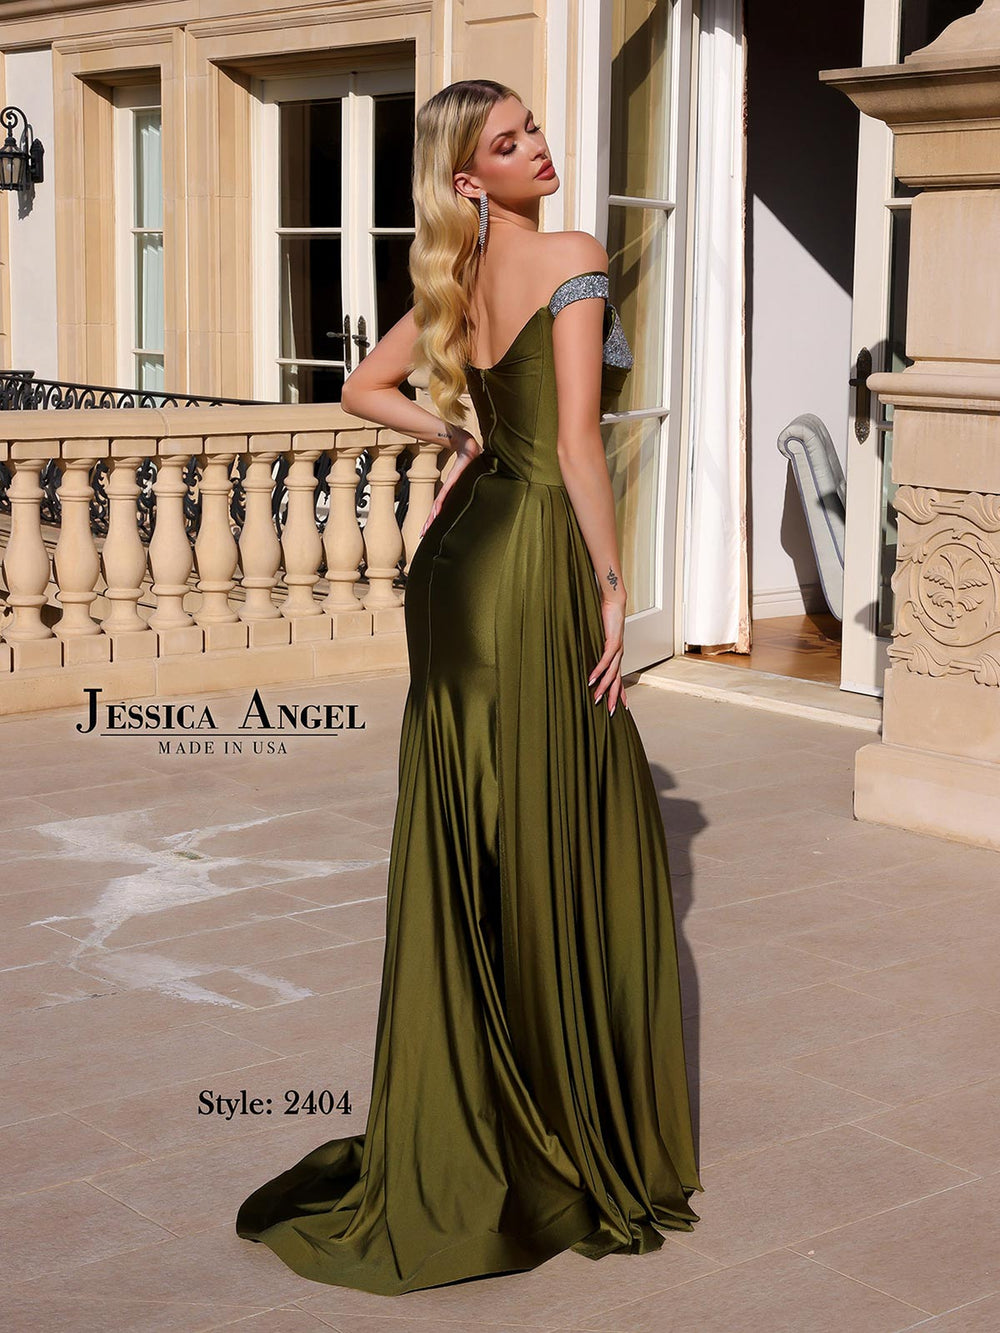 JESSICA ANGEL JA2404 DRESS - FOSTANI